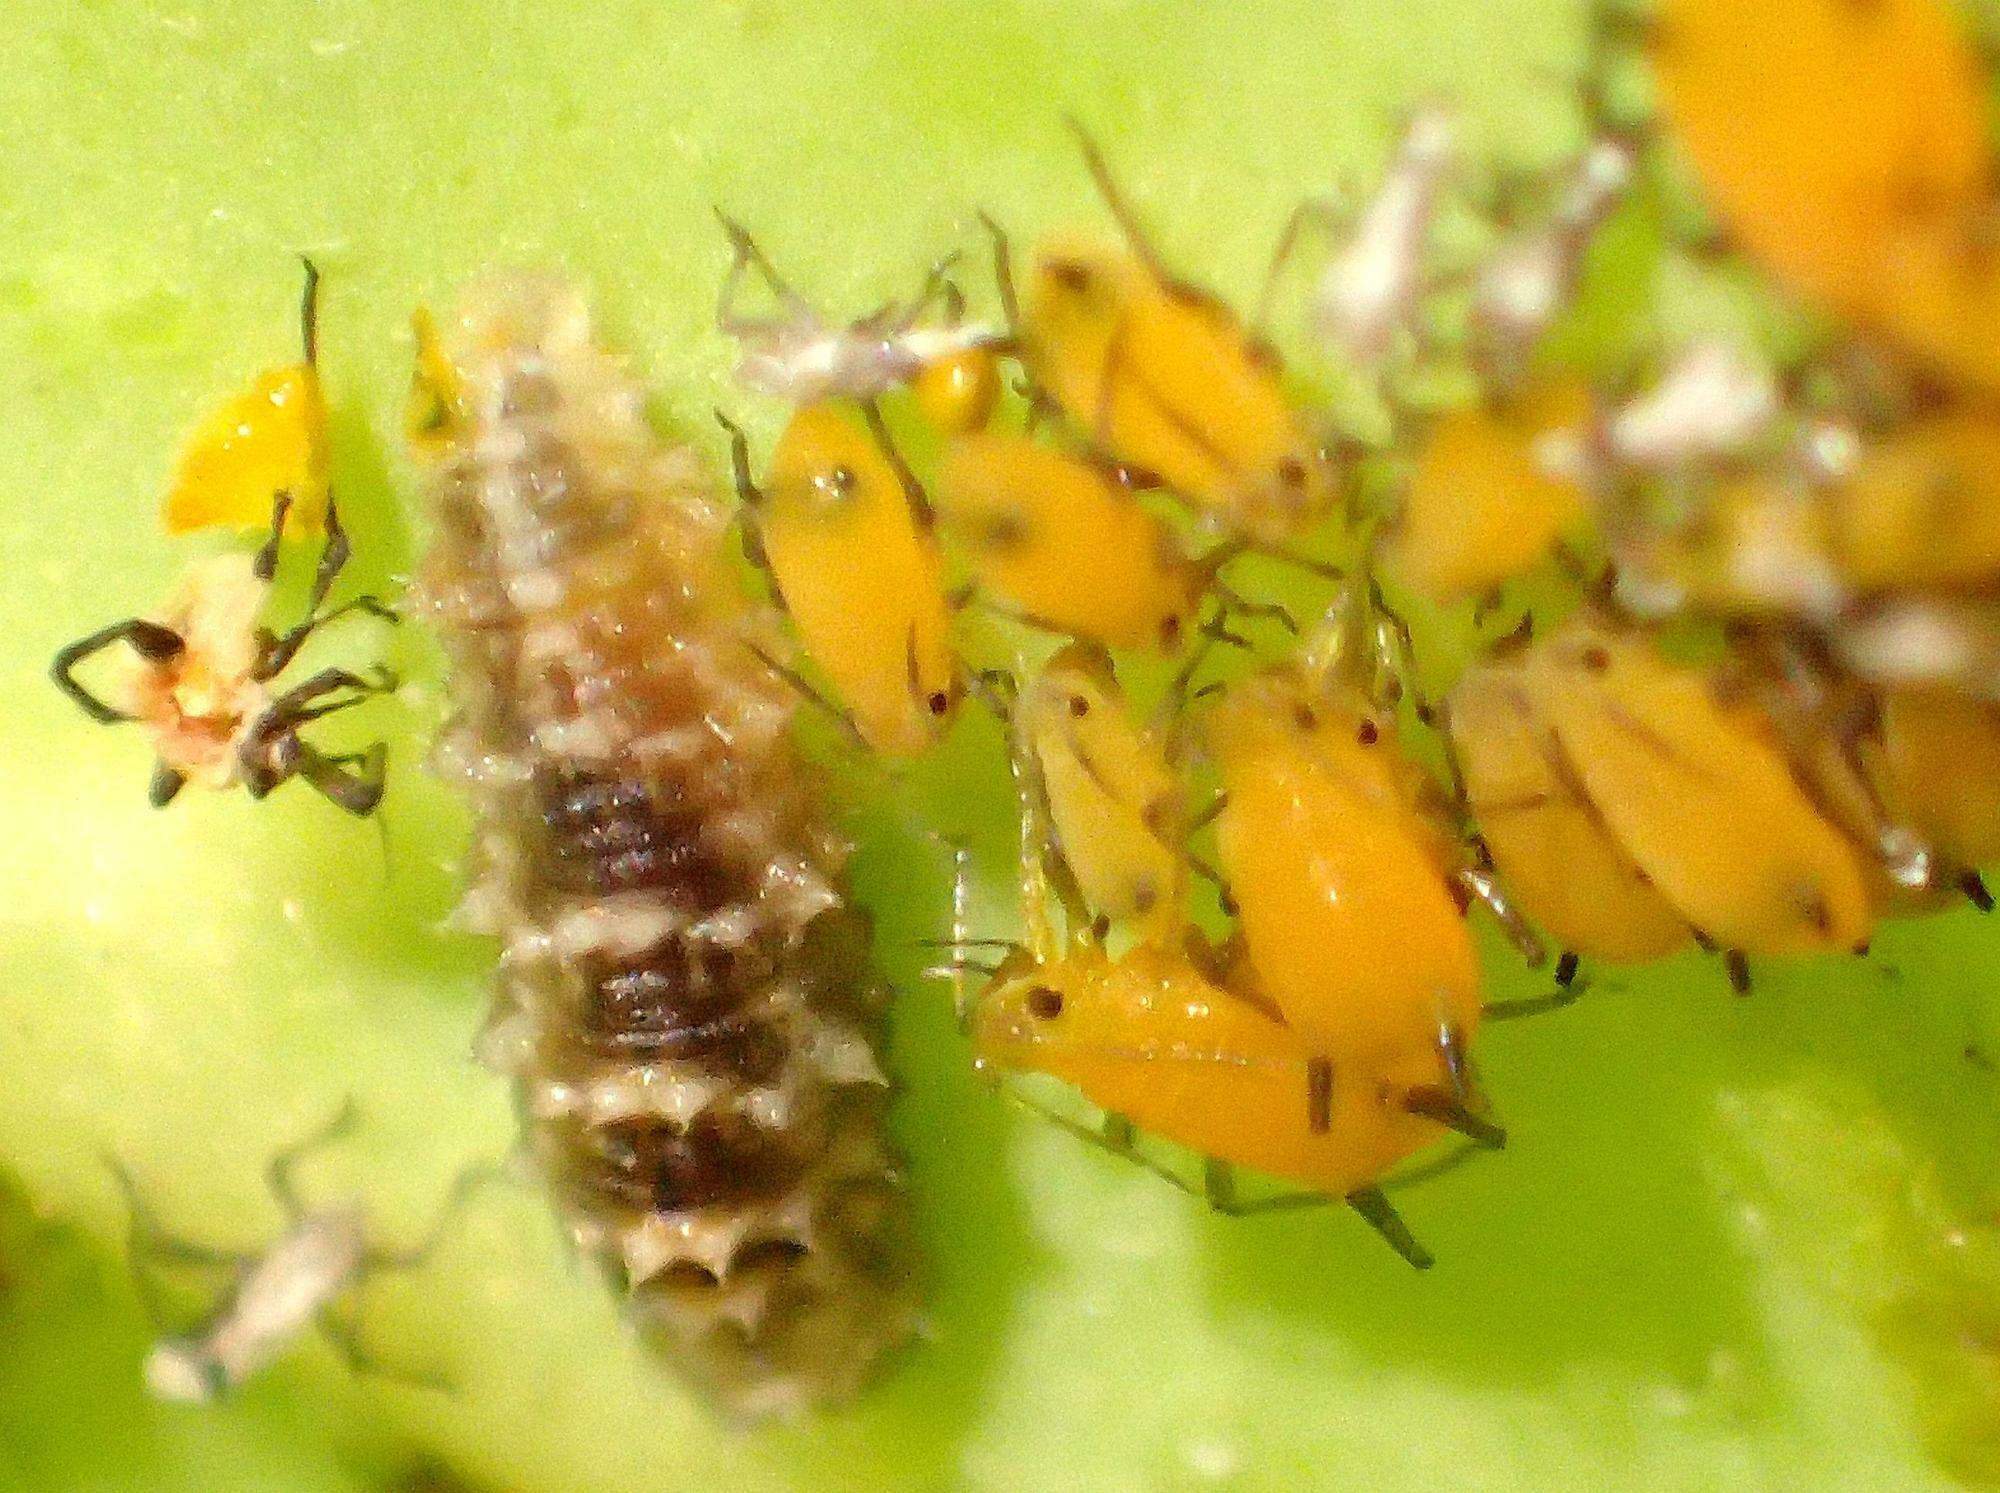 アブラムシの集団の中のホソヒラタアブ幼虫。「がんばってアブラムシを駆除して」と応援したくなる。